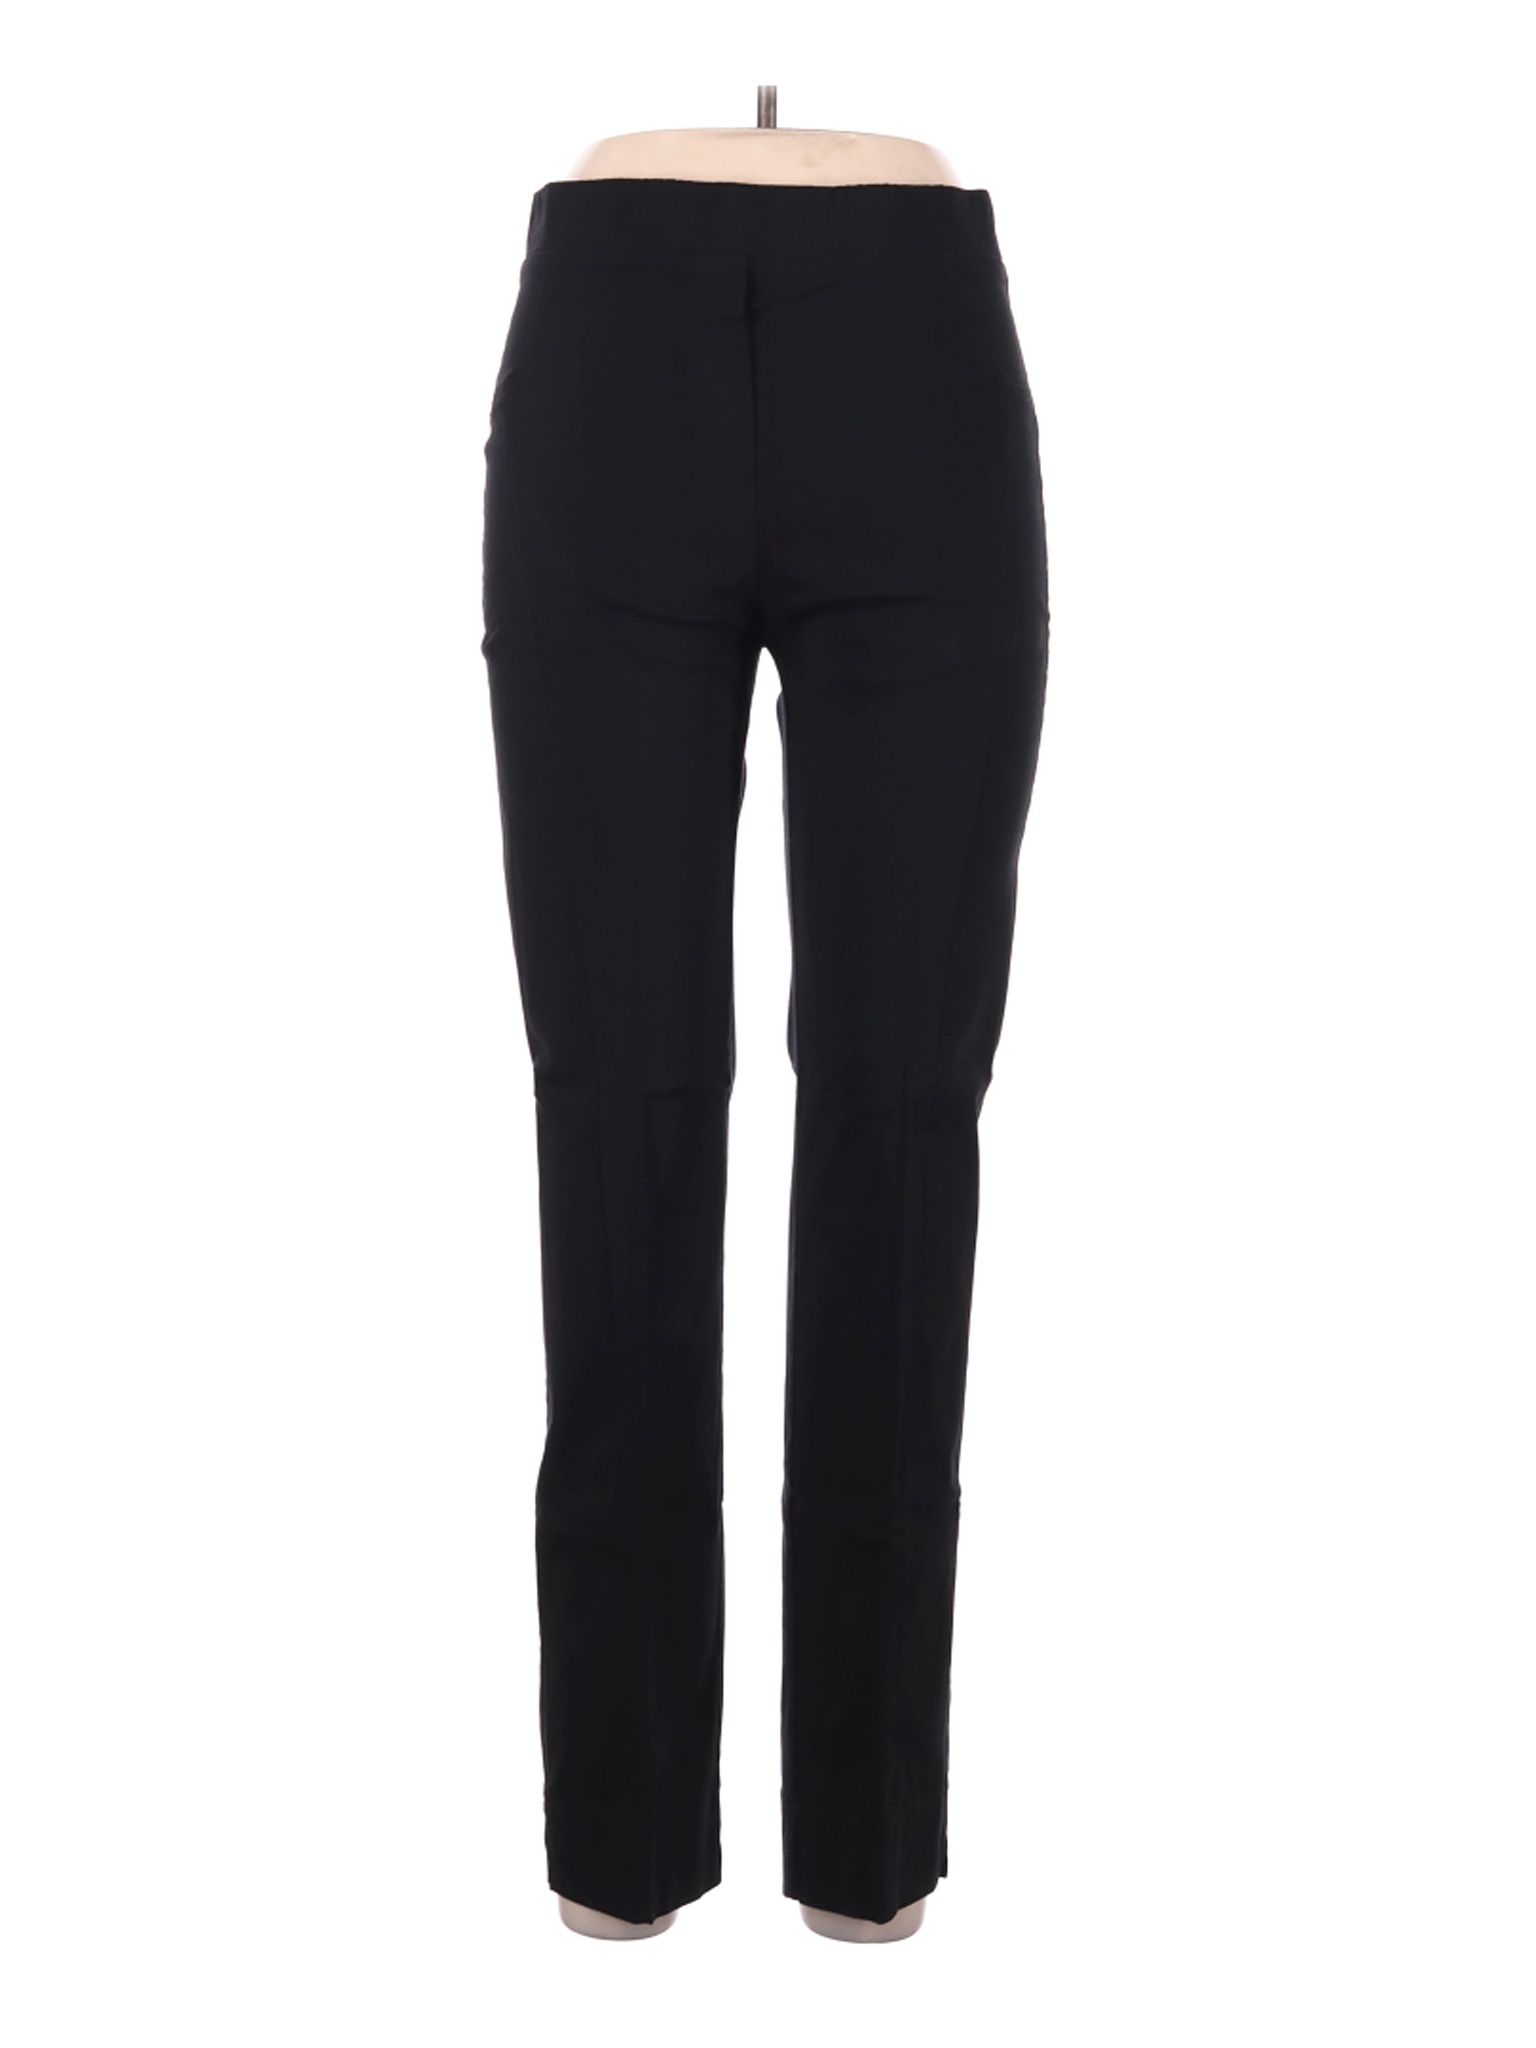 Lior Paris Women Black Casual Pants 10 | eBay